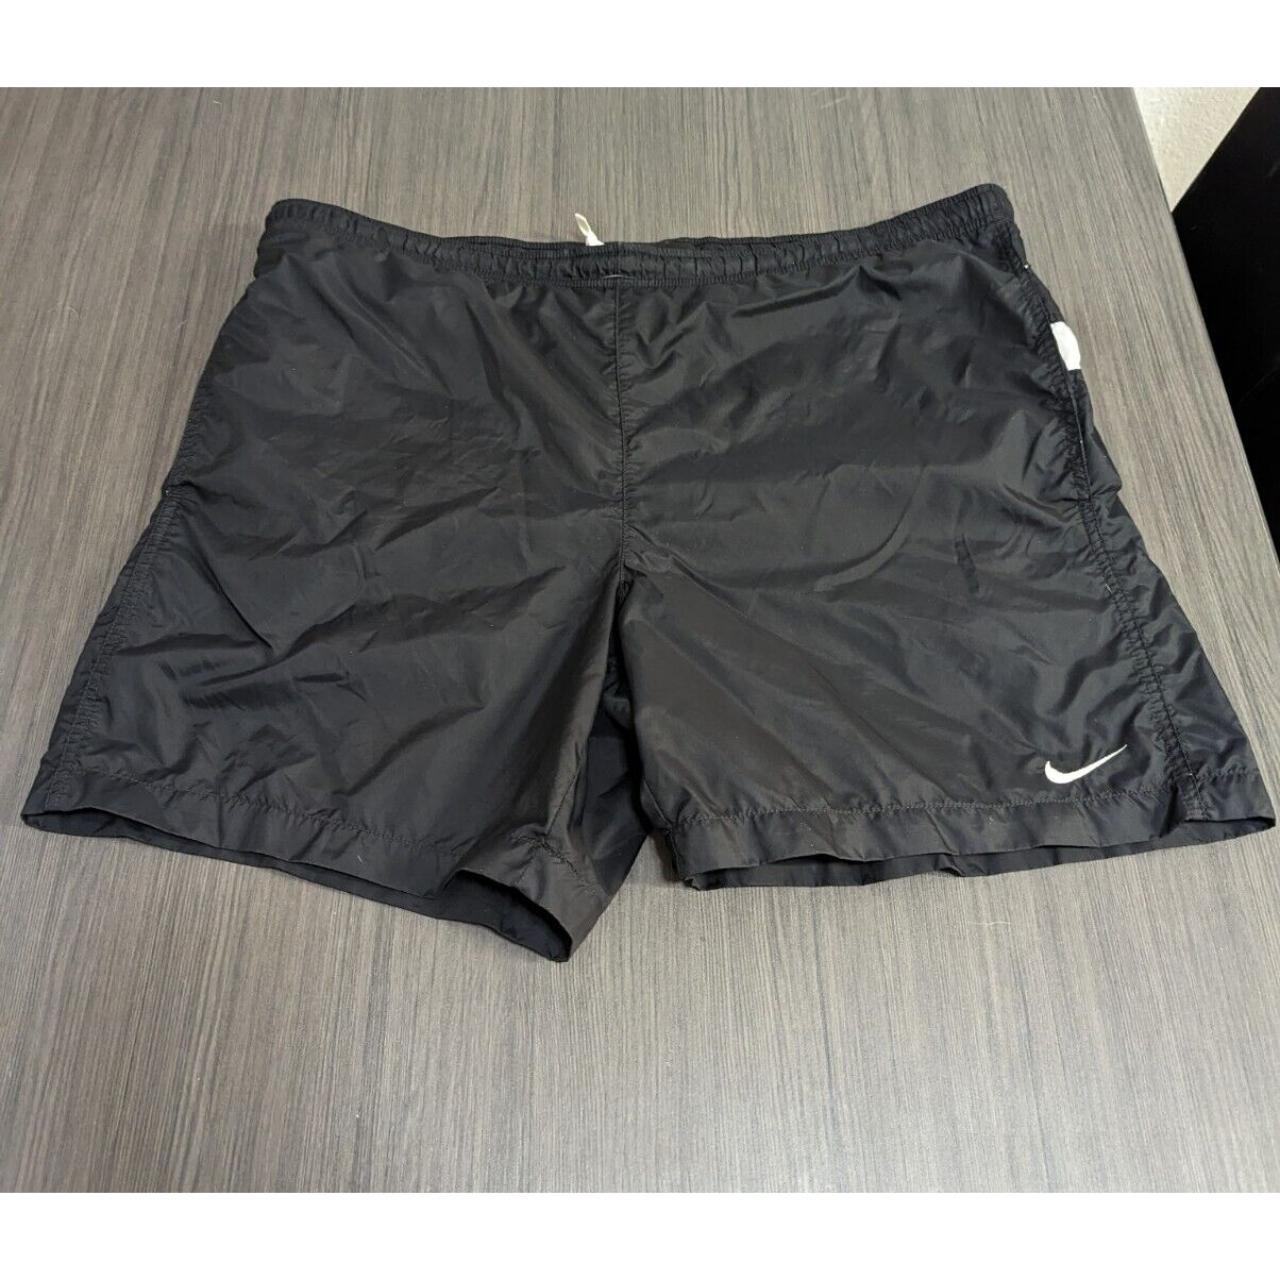 Nike Men's Black and White Swim-briefs-shorts (3)